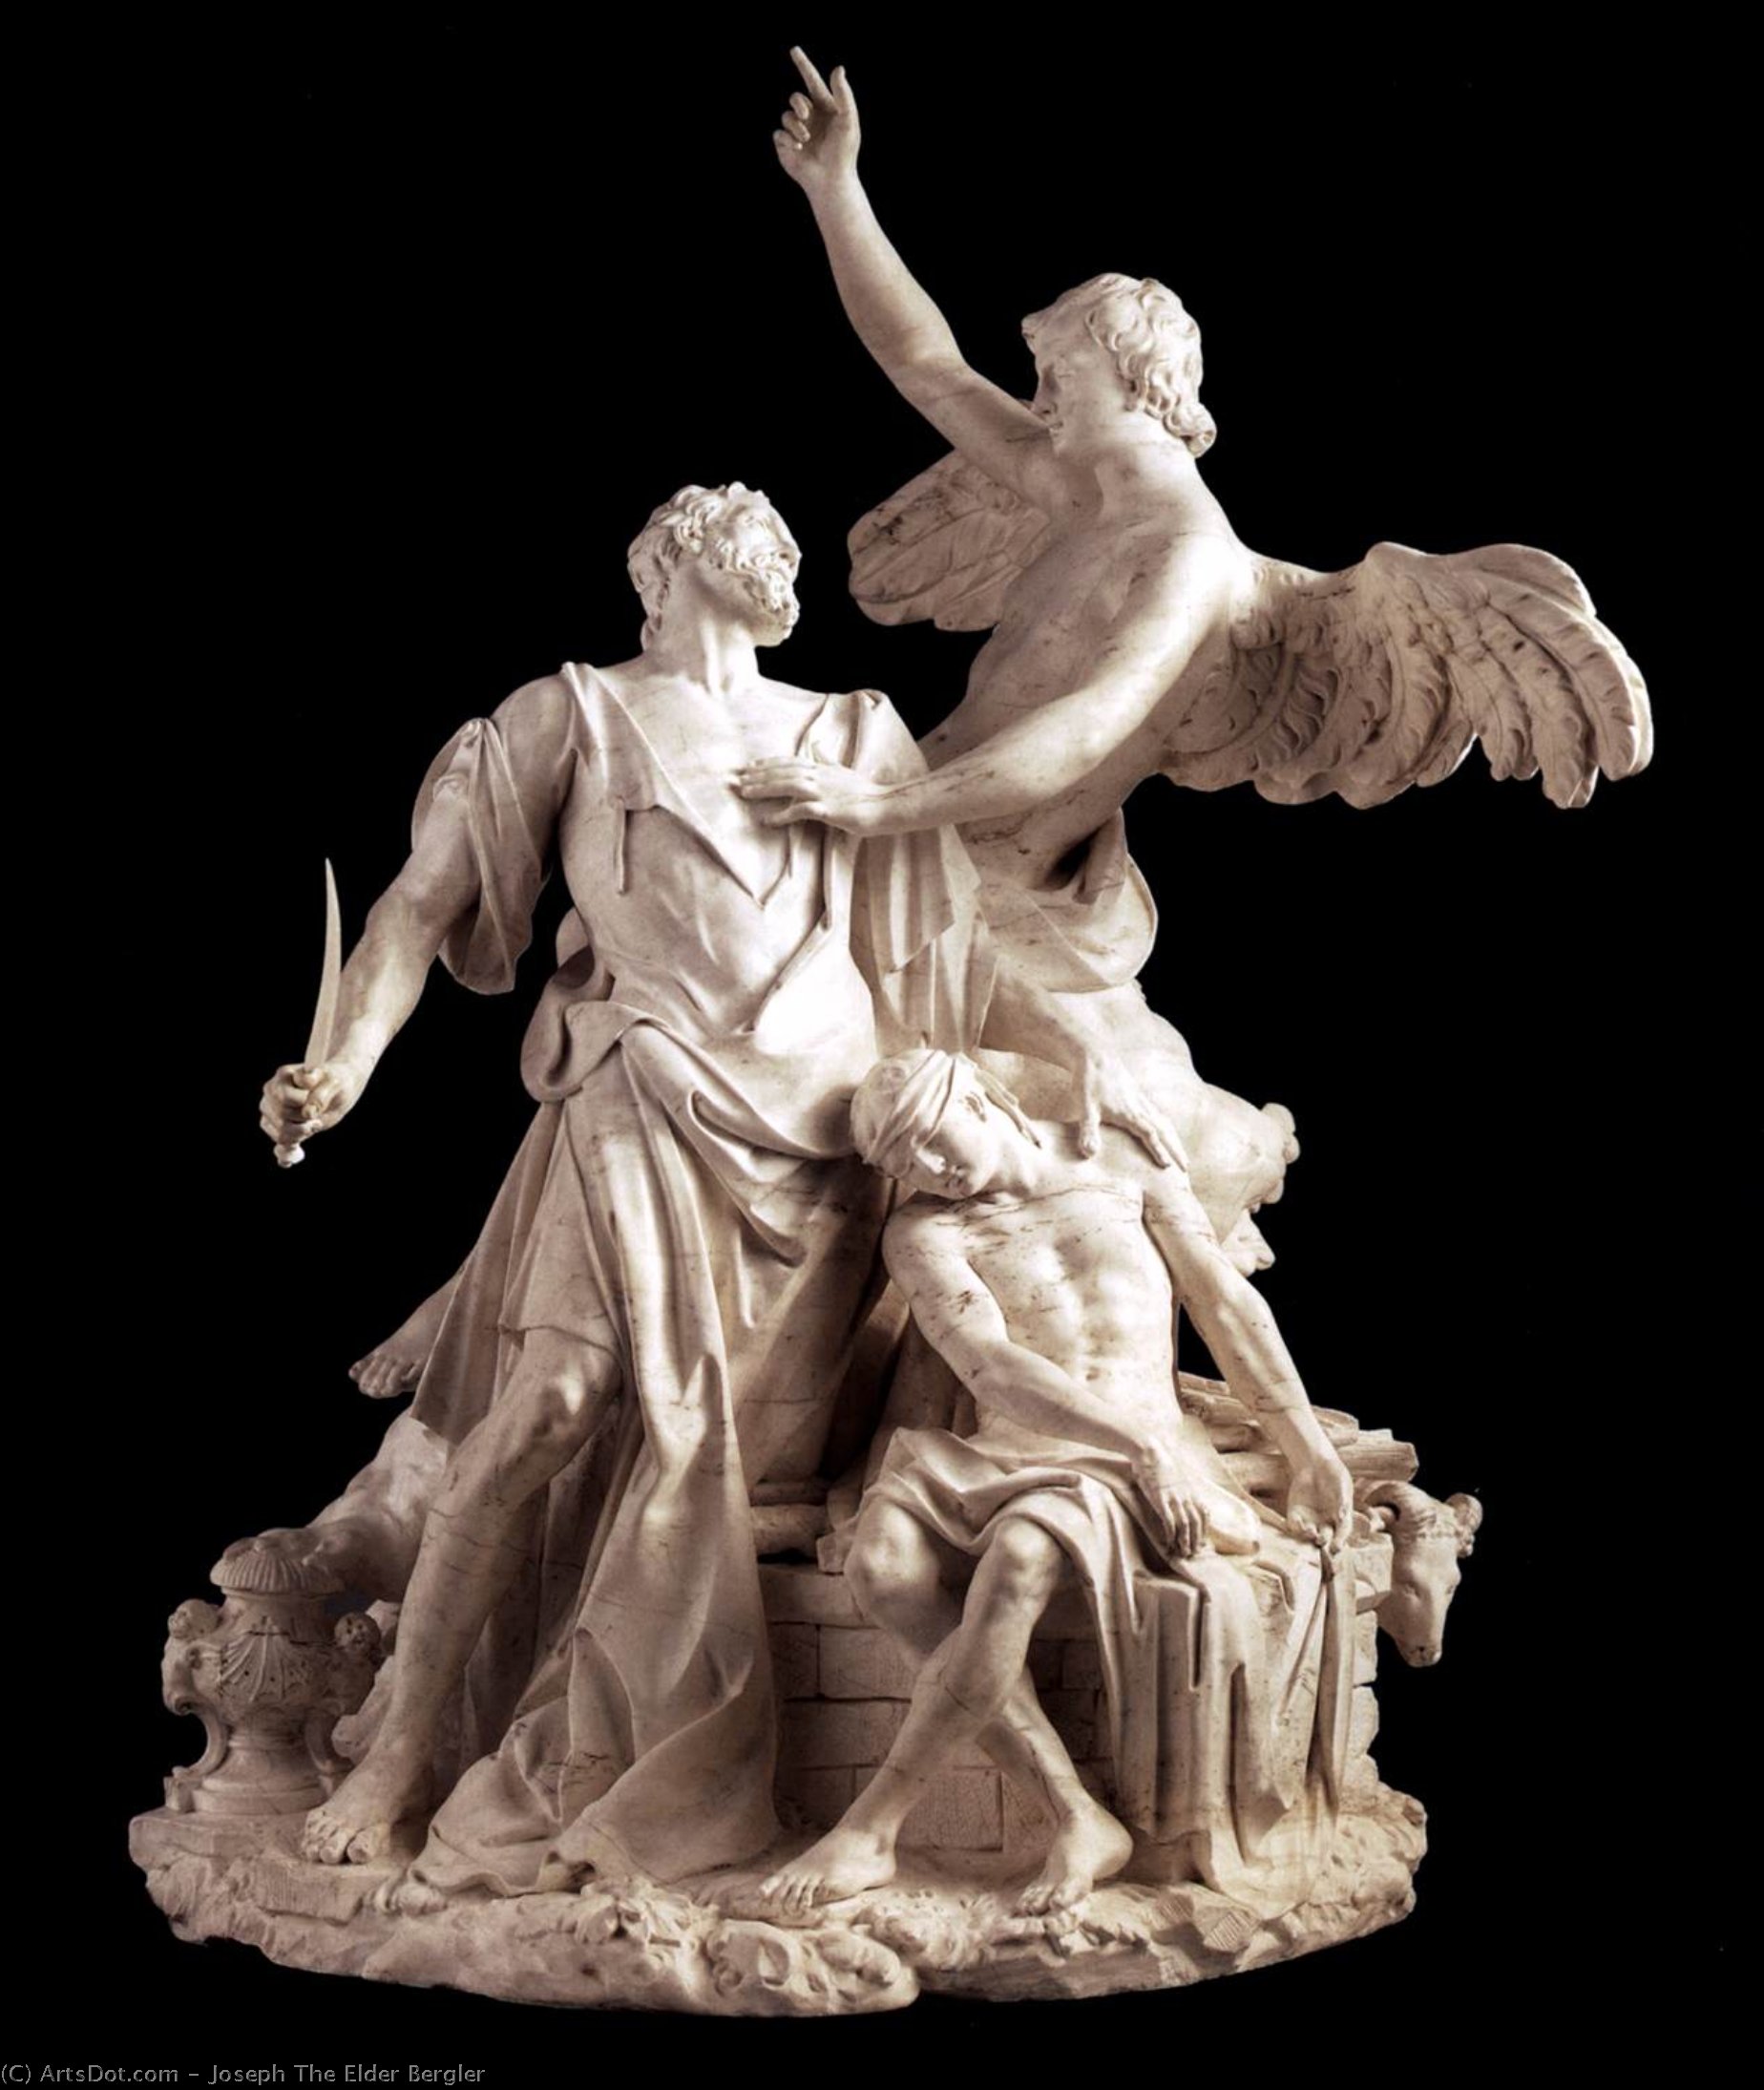 WikiOO.org - Encyclopedia of Fine Arts - Målning, konstverk Joseph The Elder Bergler - The Sacrifice of Abraham